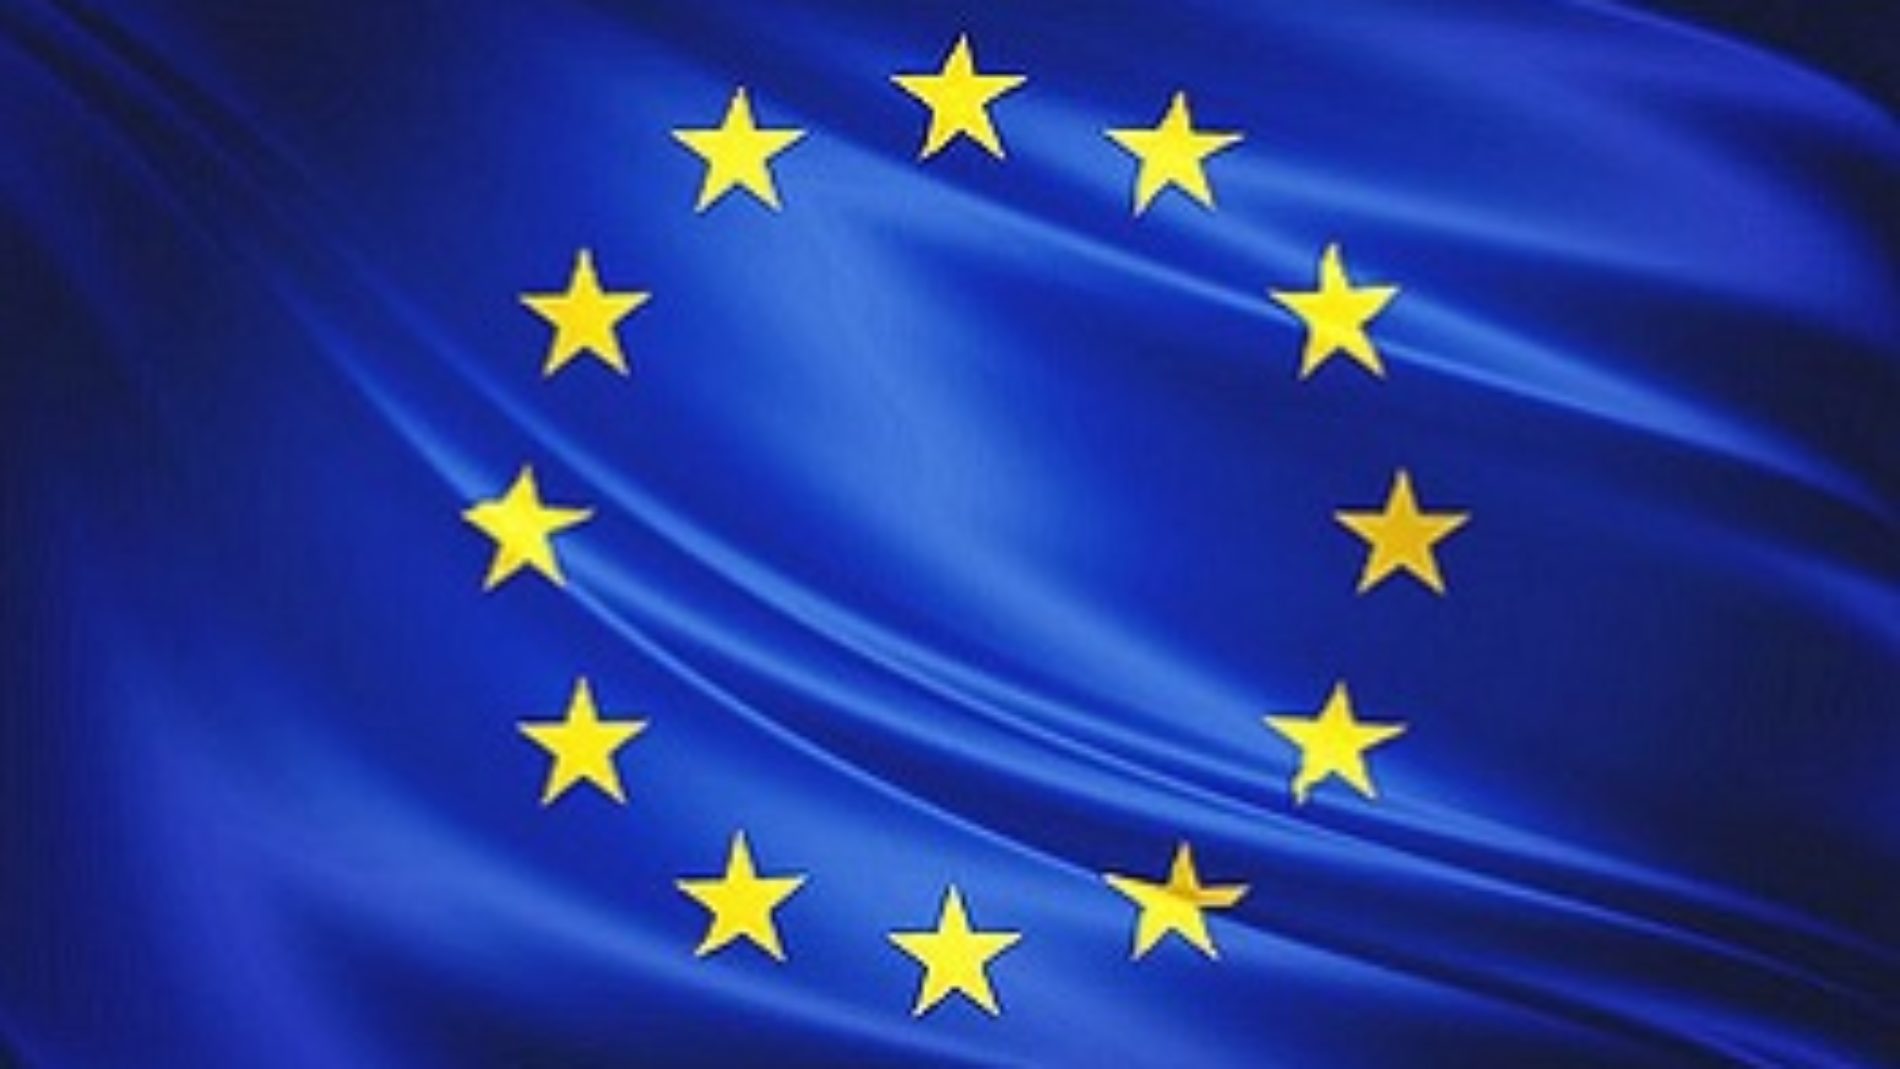 L’UE appelée à mettre en application les directives européennes sur la protection des défenseurs des droits humains